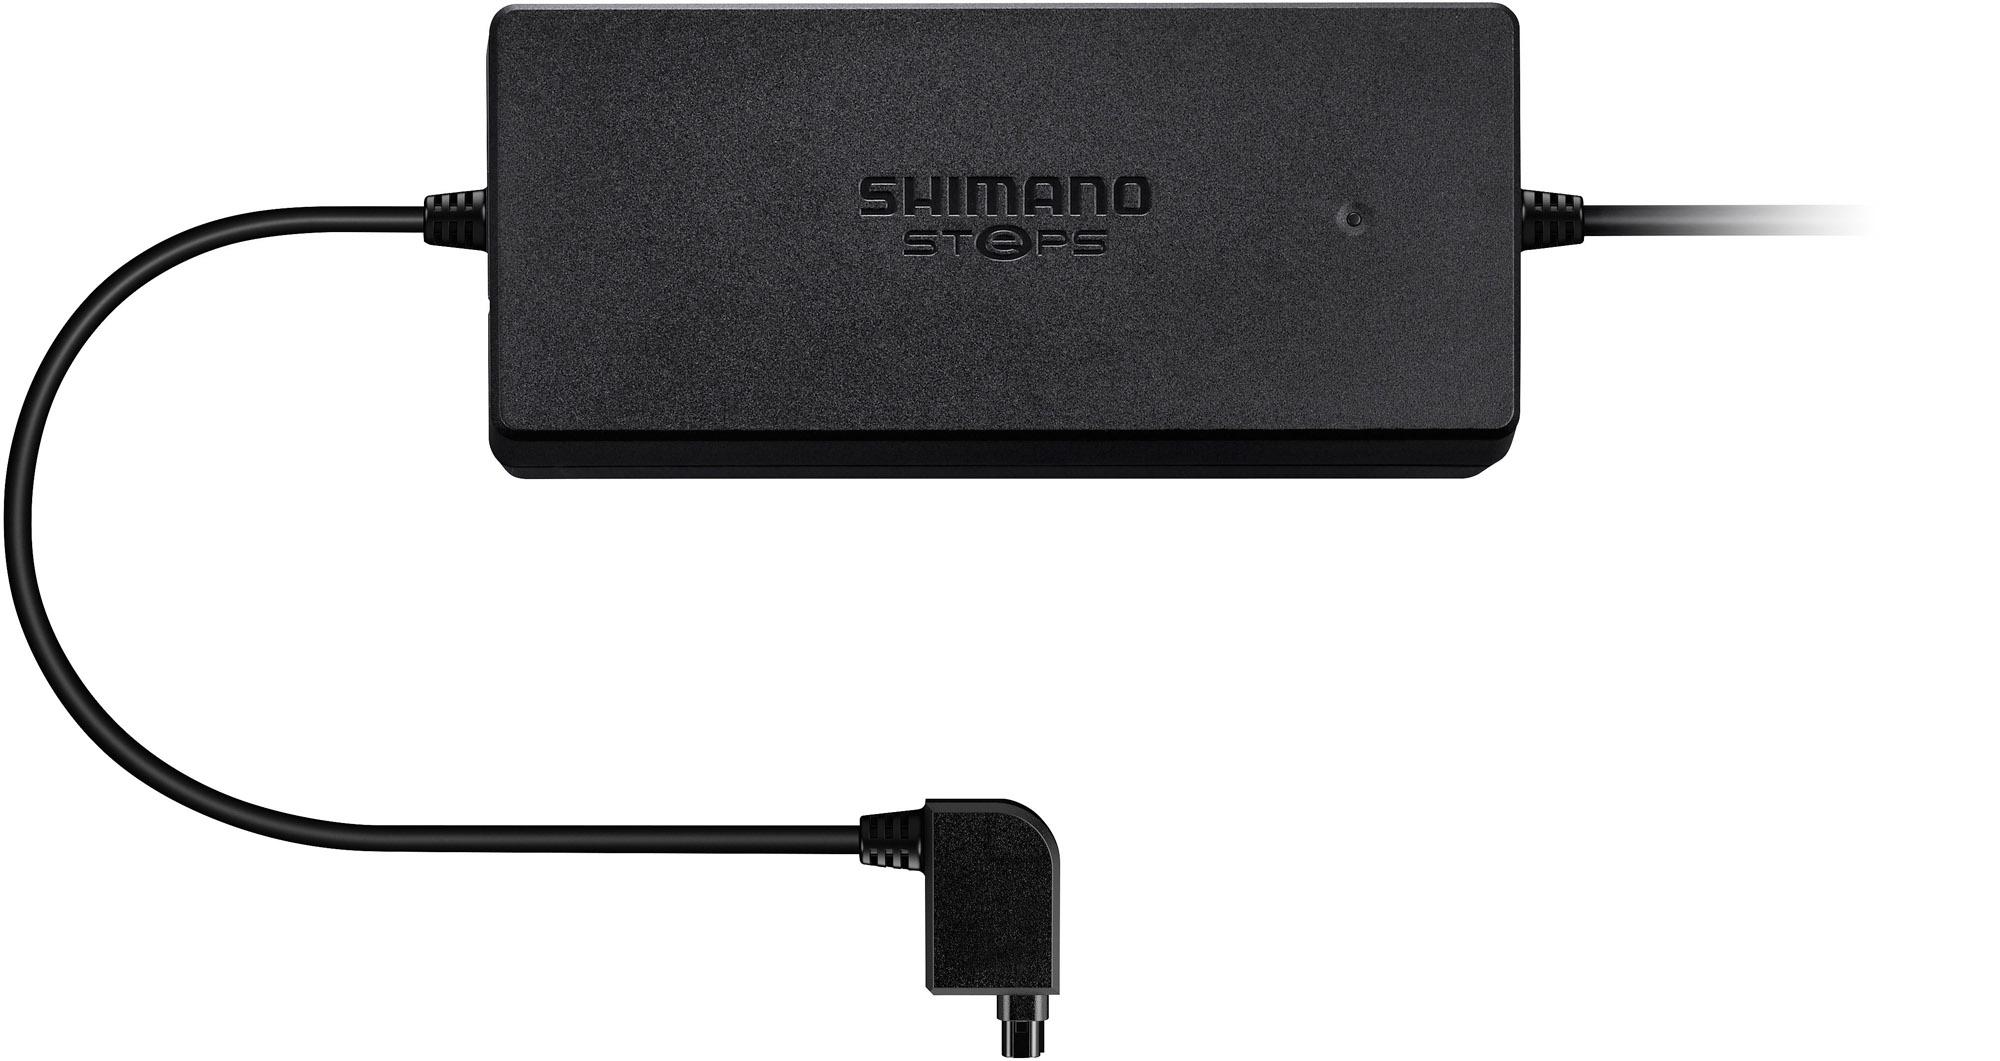 Shimano Steps Ec-e6000 Battery Charger - Black